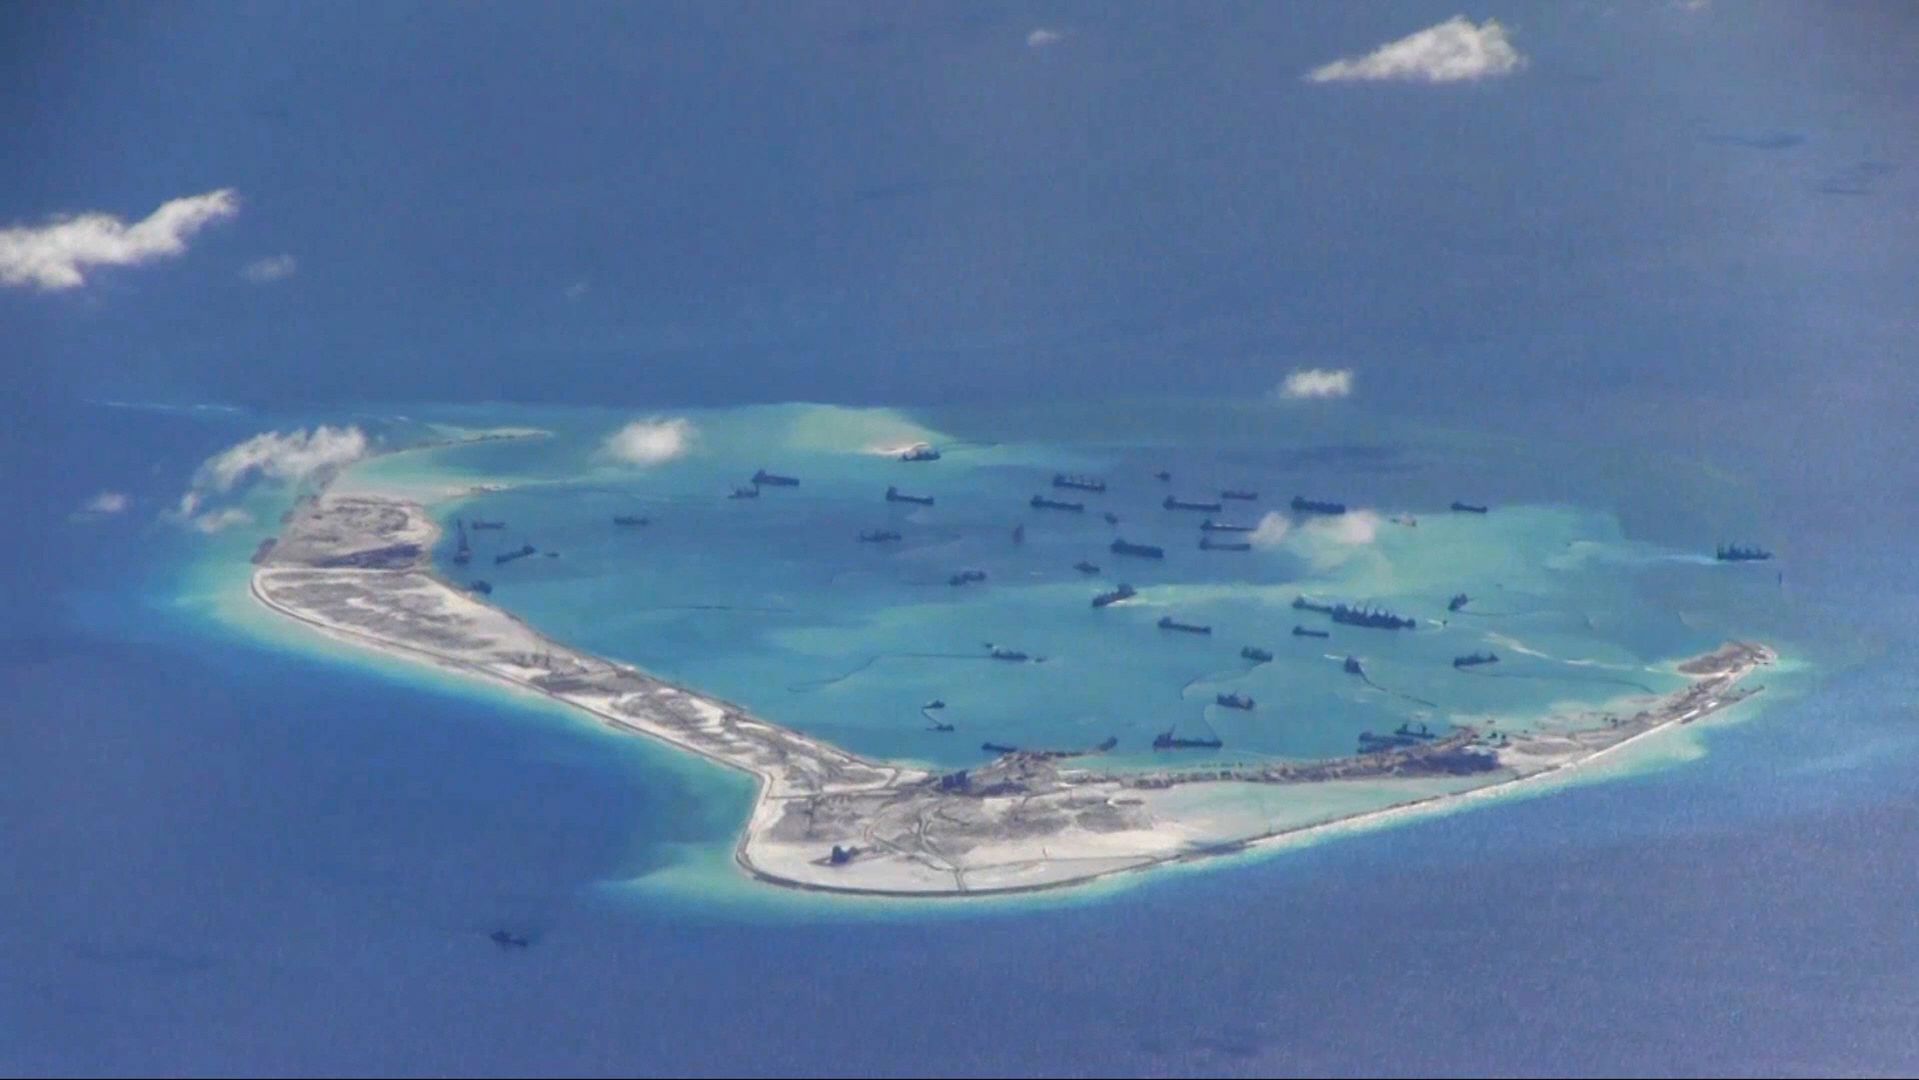 Mỹ tiếp tục cảnh báo Trung Quốc về Biển Đông